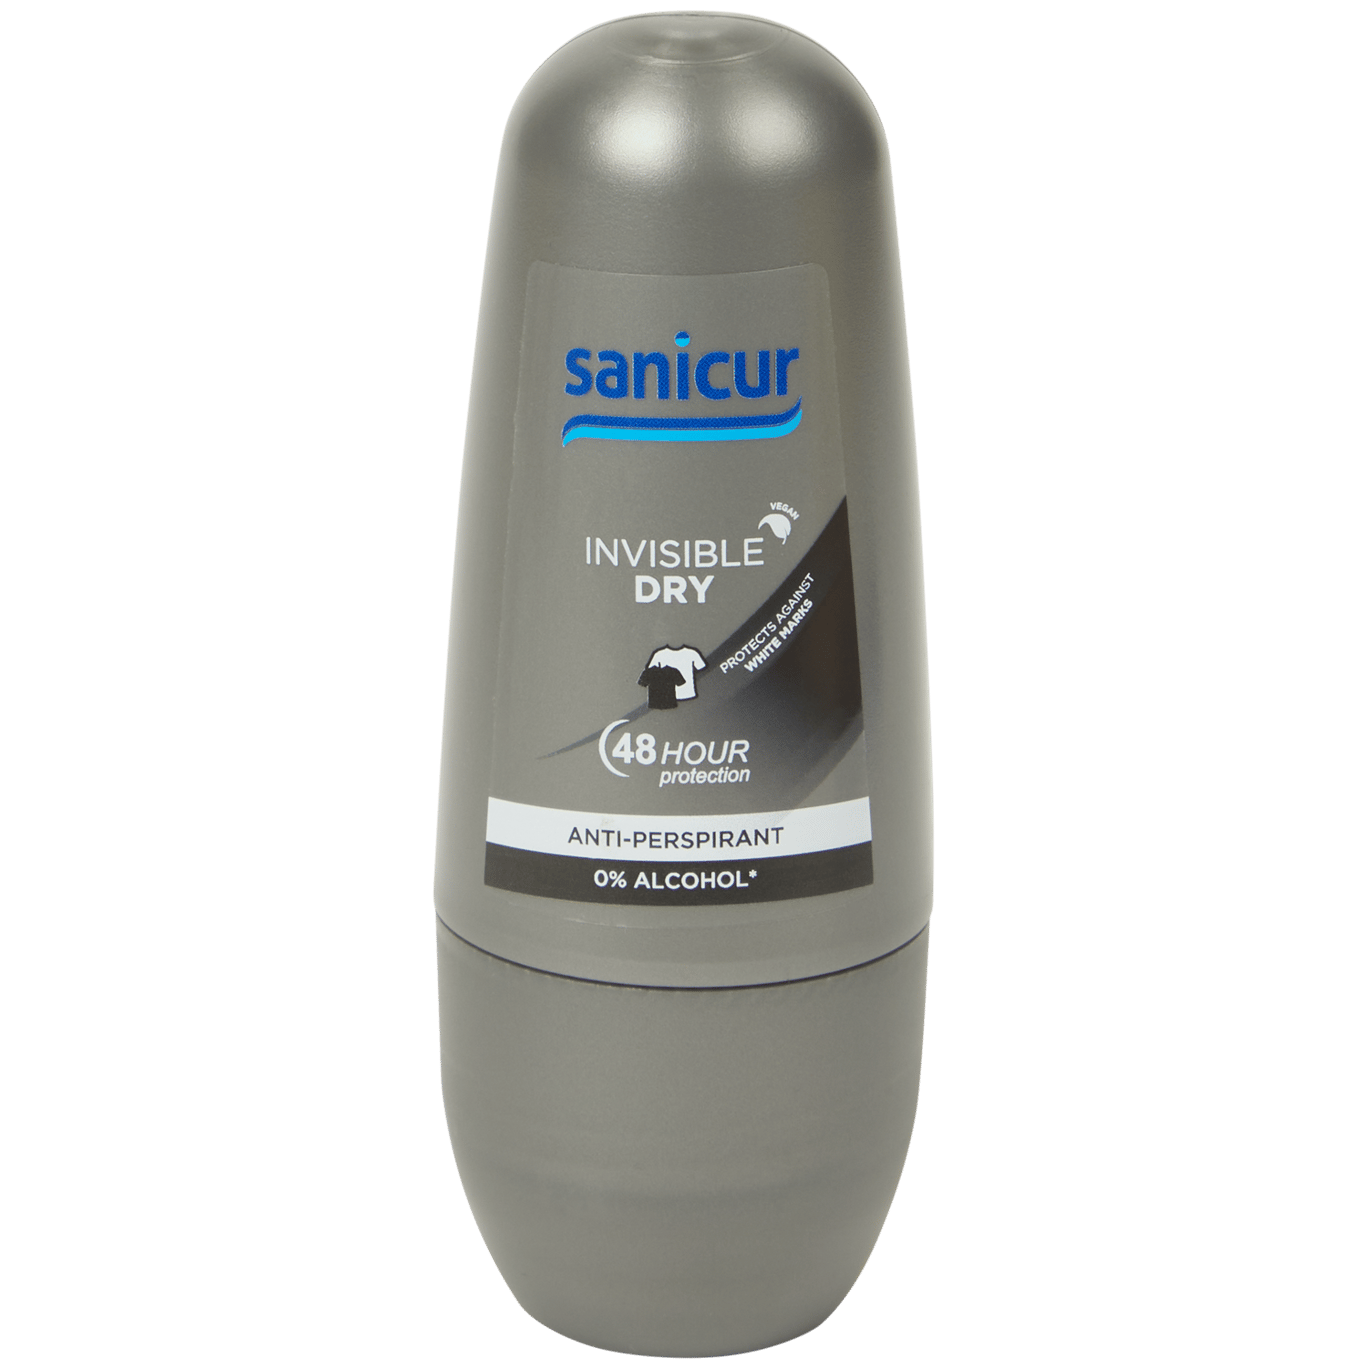 Sanicur deodorant Invisible Dry